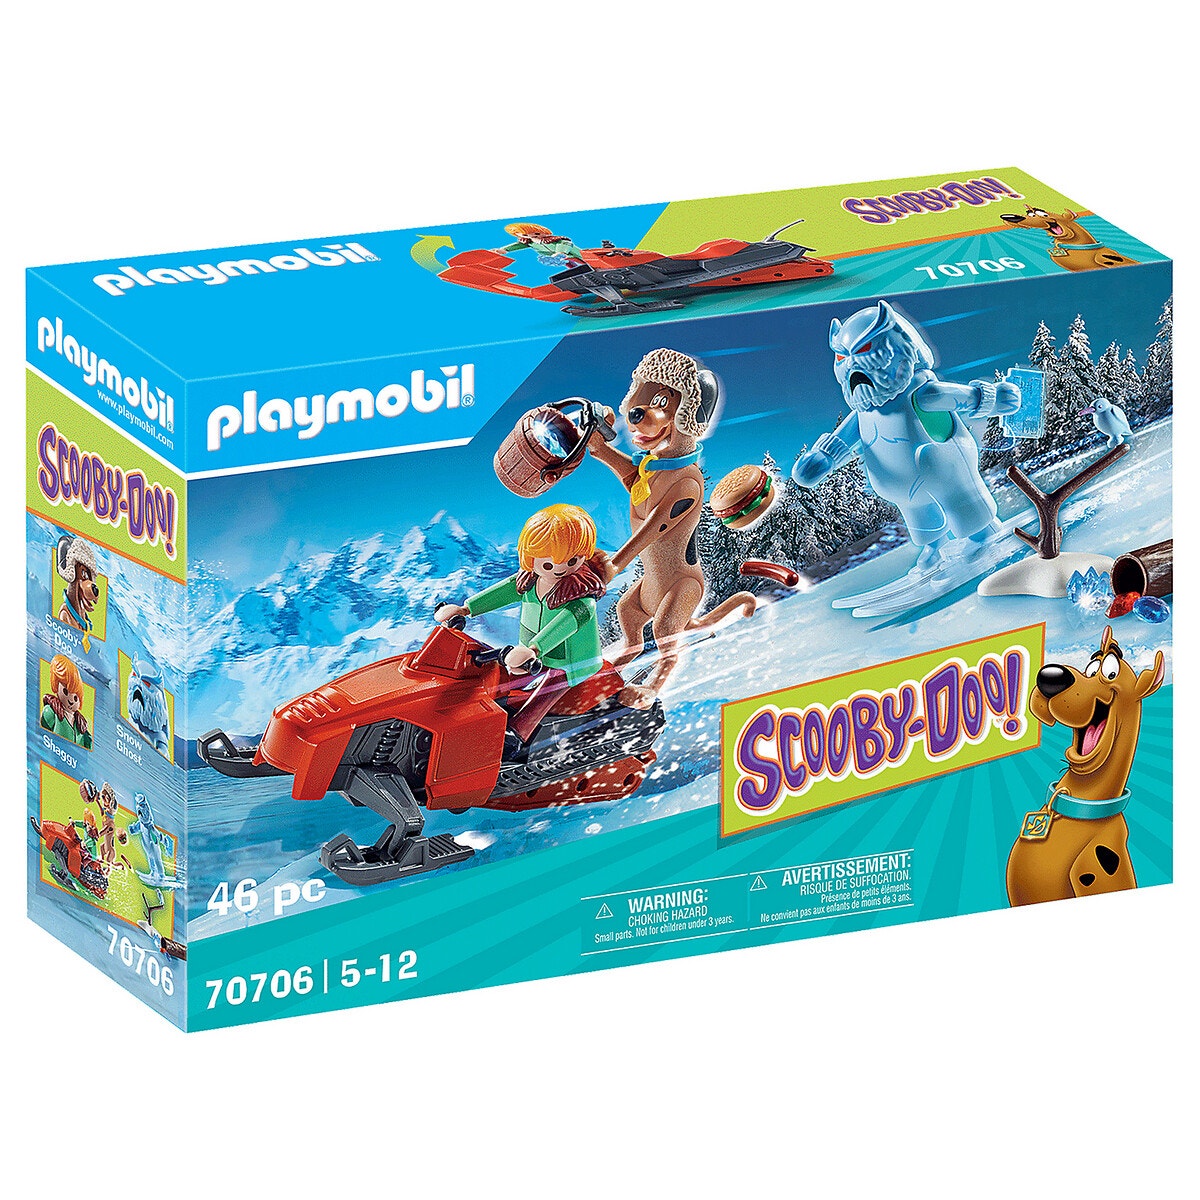 Astérix panoramix et le chaudron de potion magique multicolore Playmobil